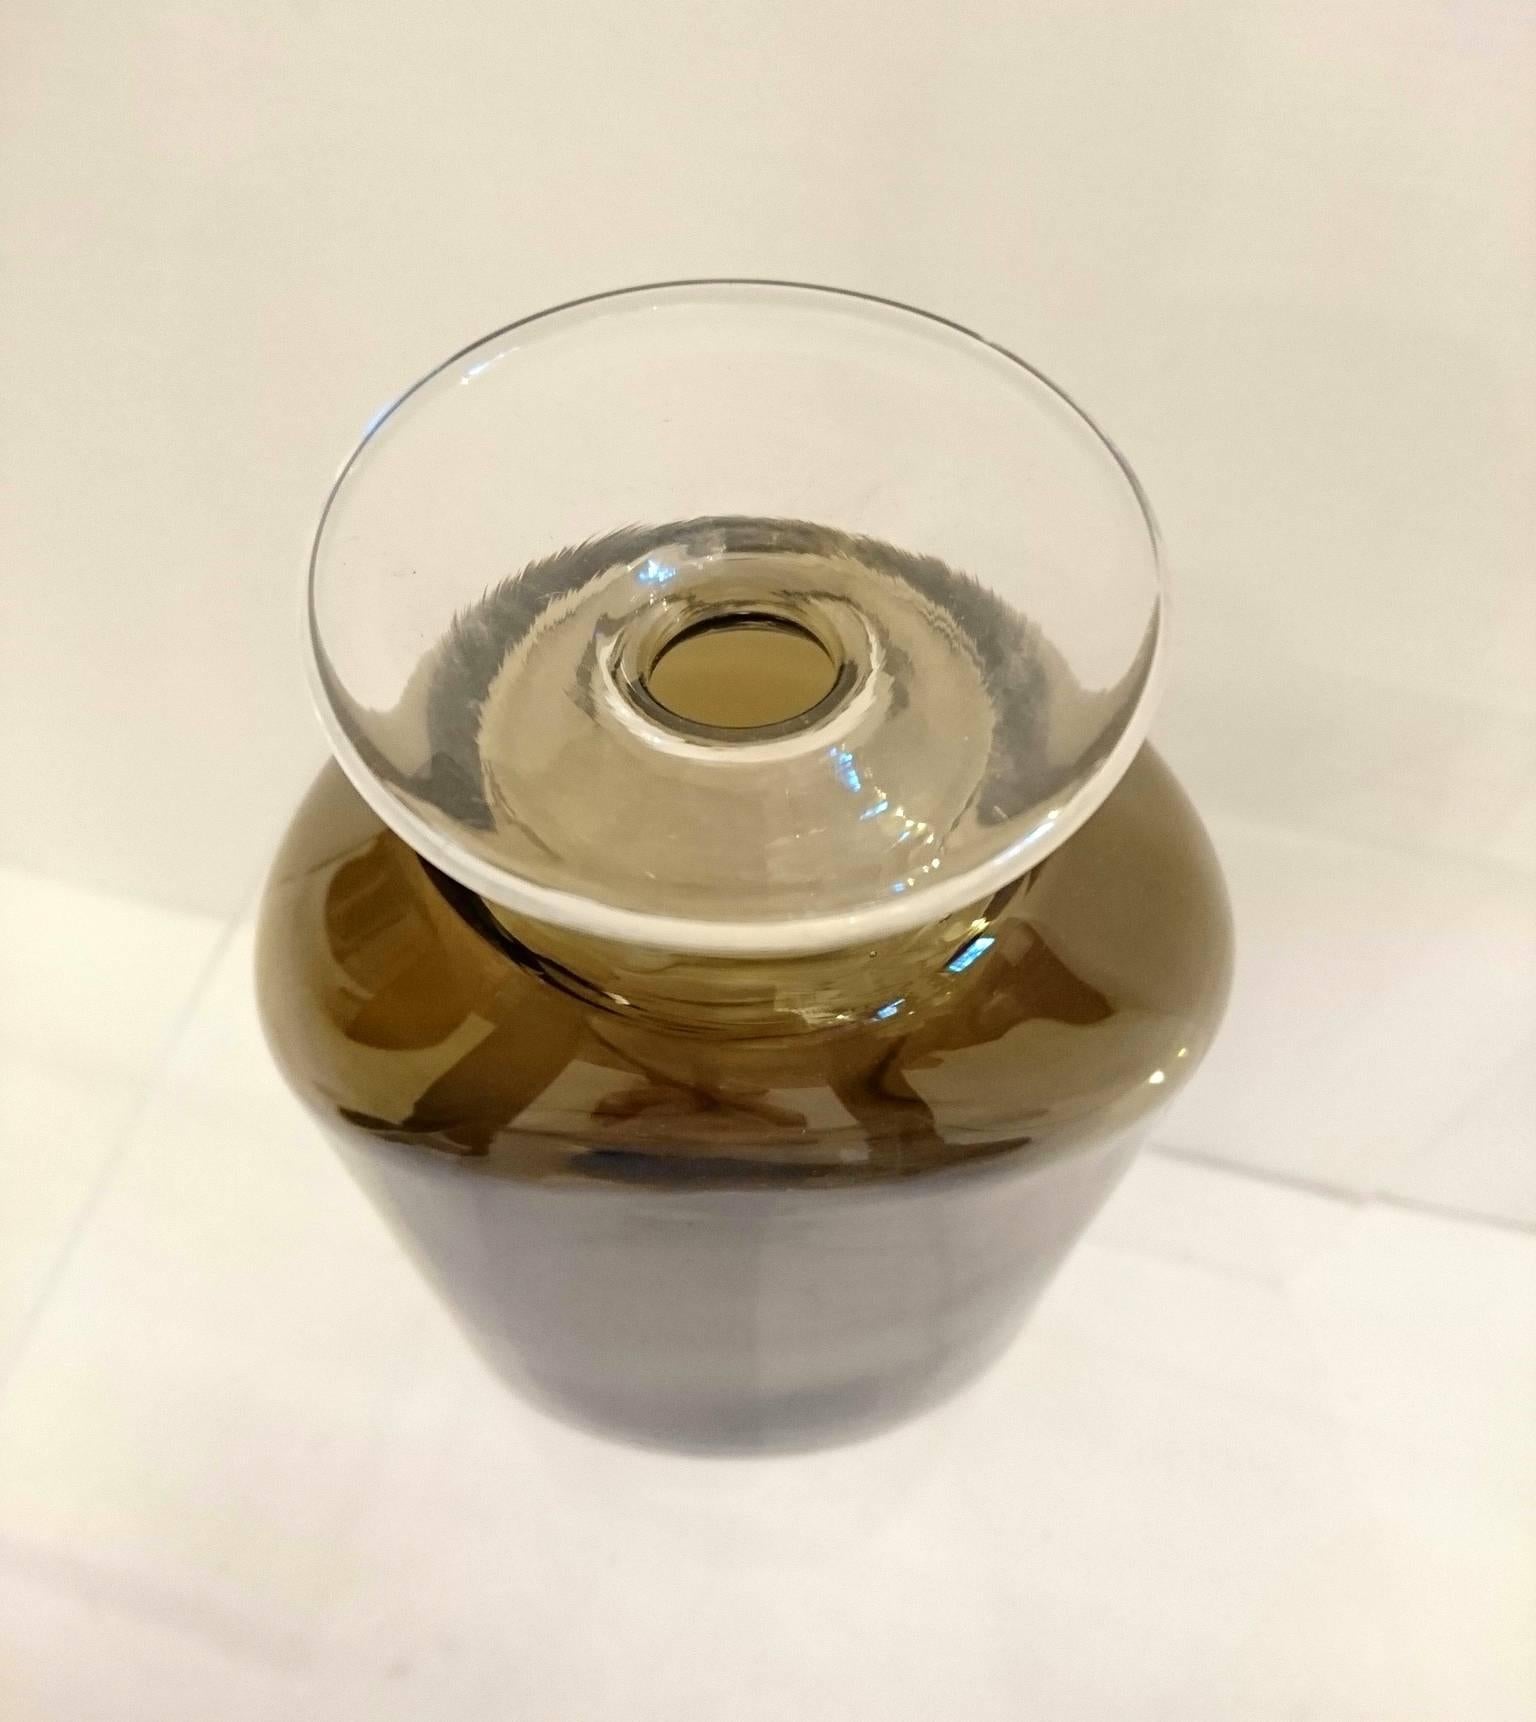 Vase soufflé à la main, conçu par Eva Englund pour le fabricant de verre Pukeberg, en Suède, en verre fumé foncé qui entoure le sommet en verre clair.